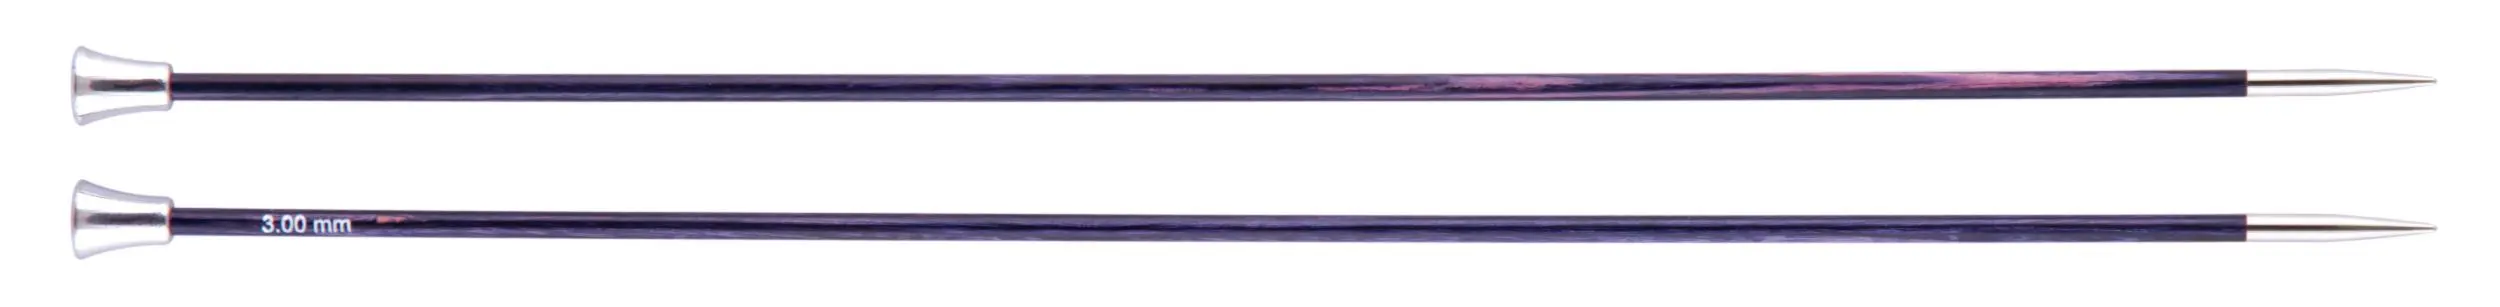 29211 Спиці прямі Royale KnitPro, 35 см, 3.00 мм